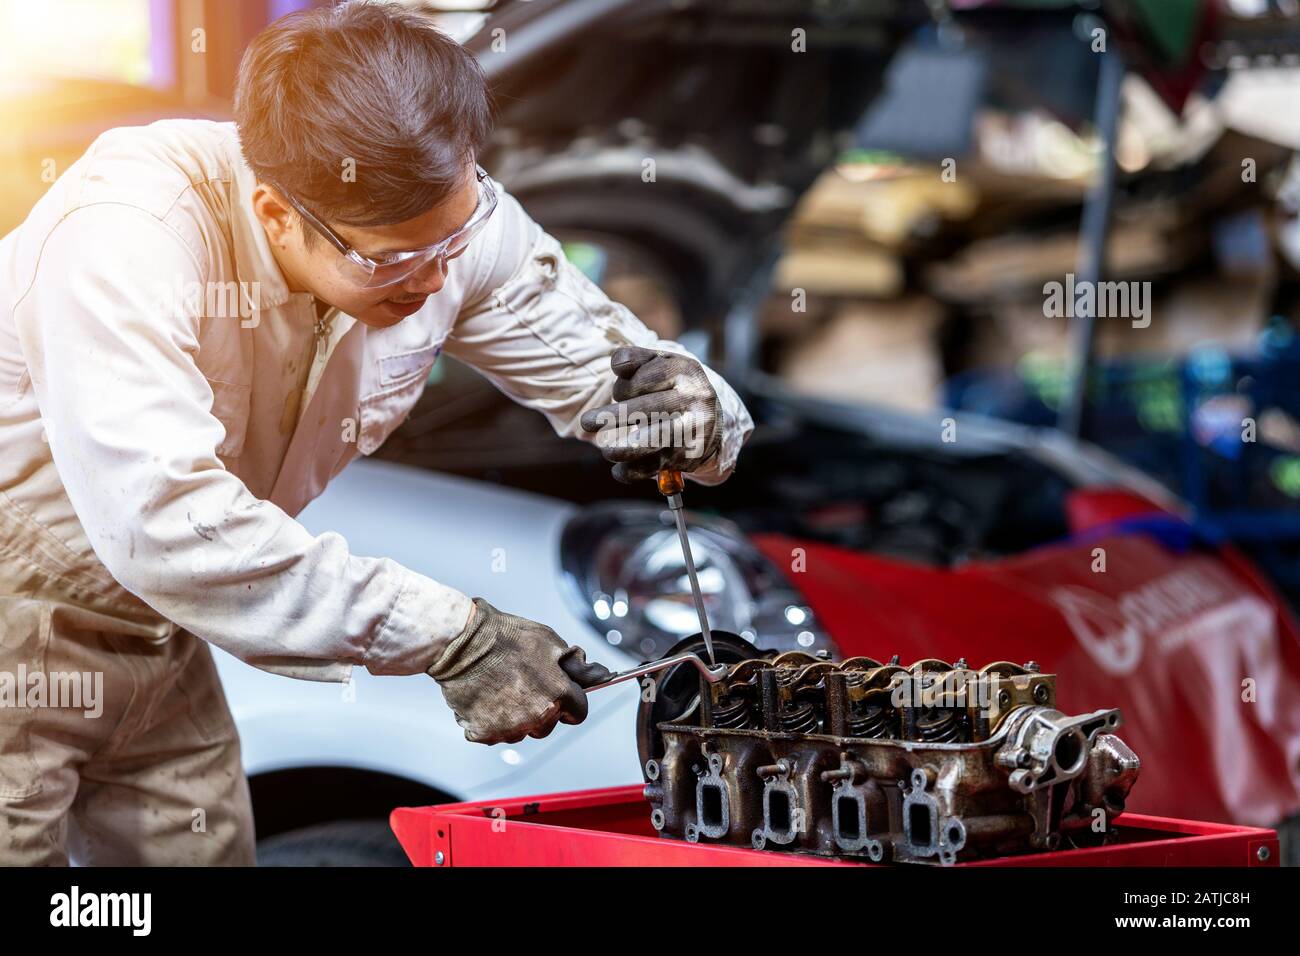 Technicien automobile démontrant comment installer une soupape de moteur de voiture dans le garage Banque D'Images